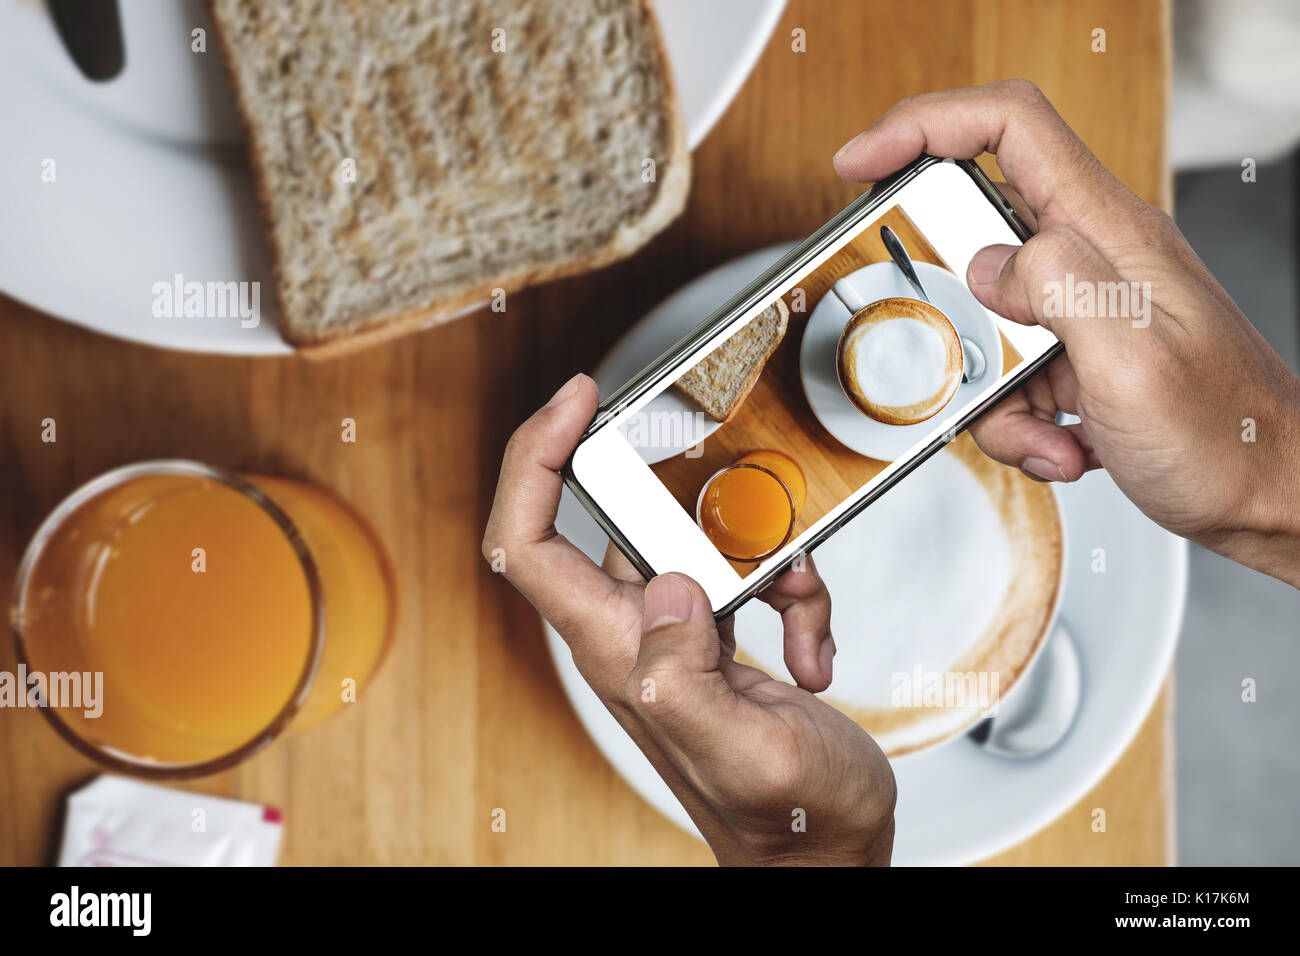 Prendendo il cibo foto, cibo fotografia di smart phone, pasto mattutino con caffè caldo Foto Stock